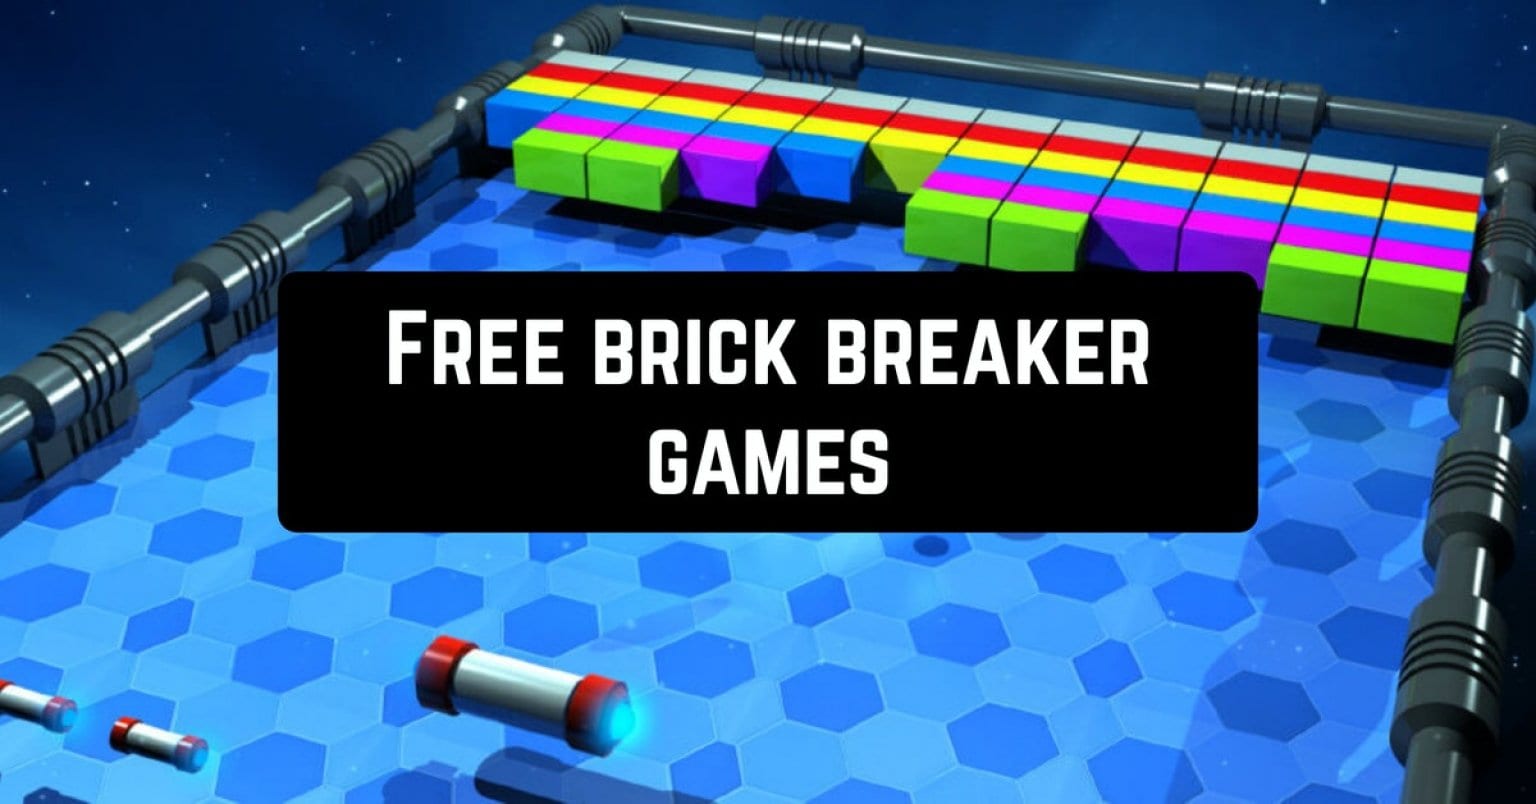 ball breaking bricks game free download windows 10